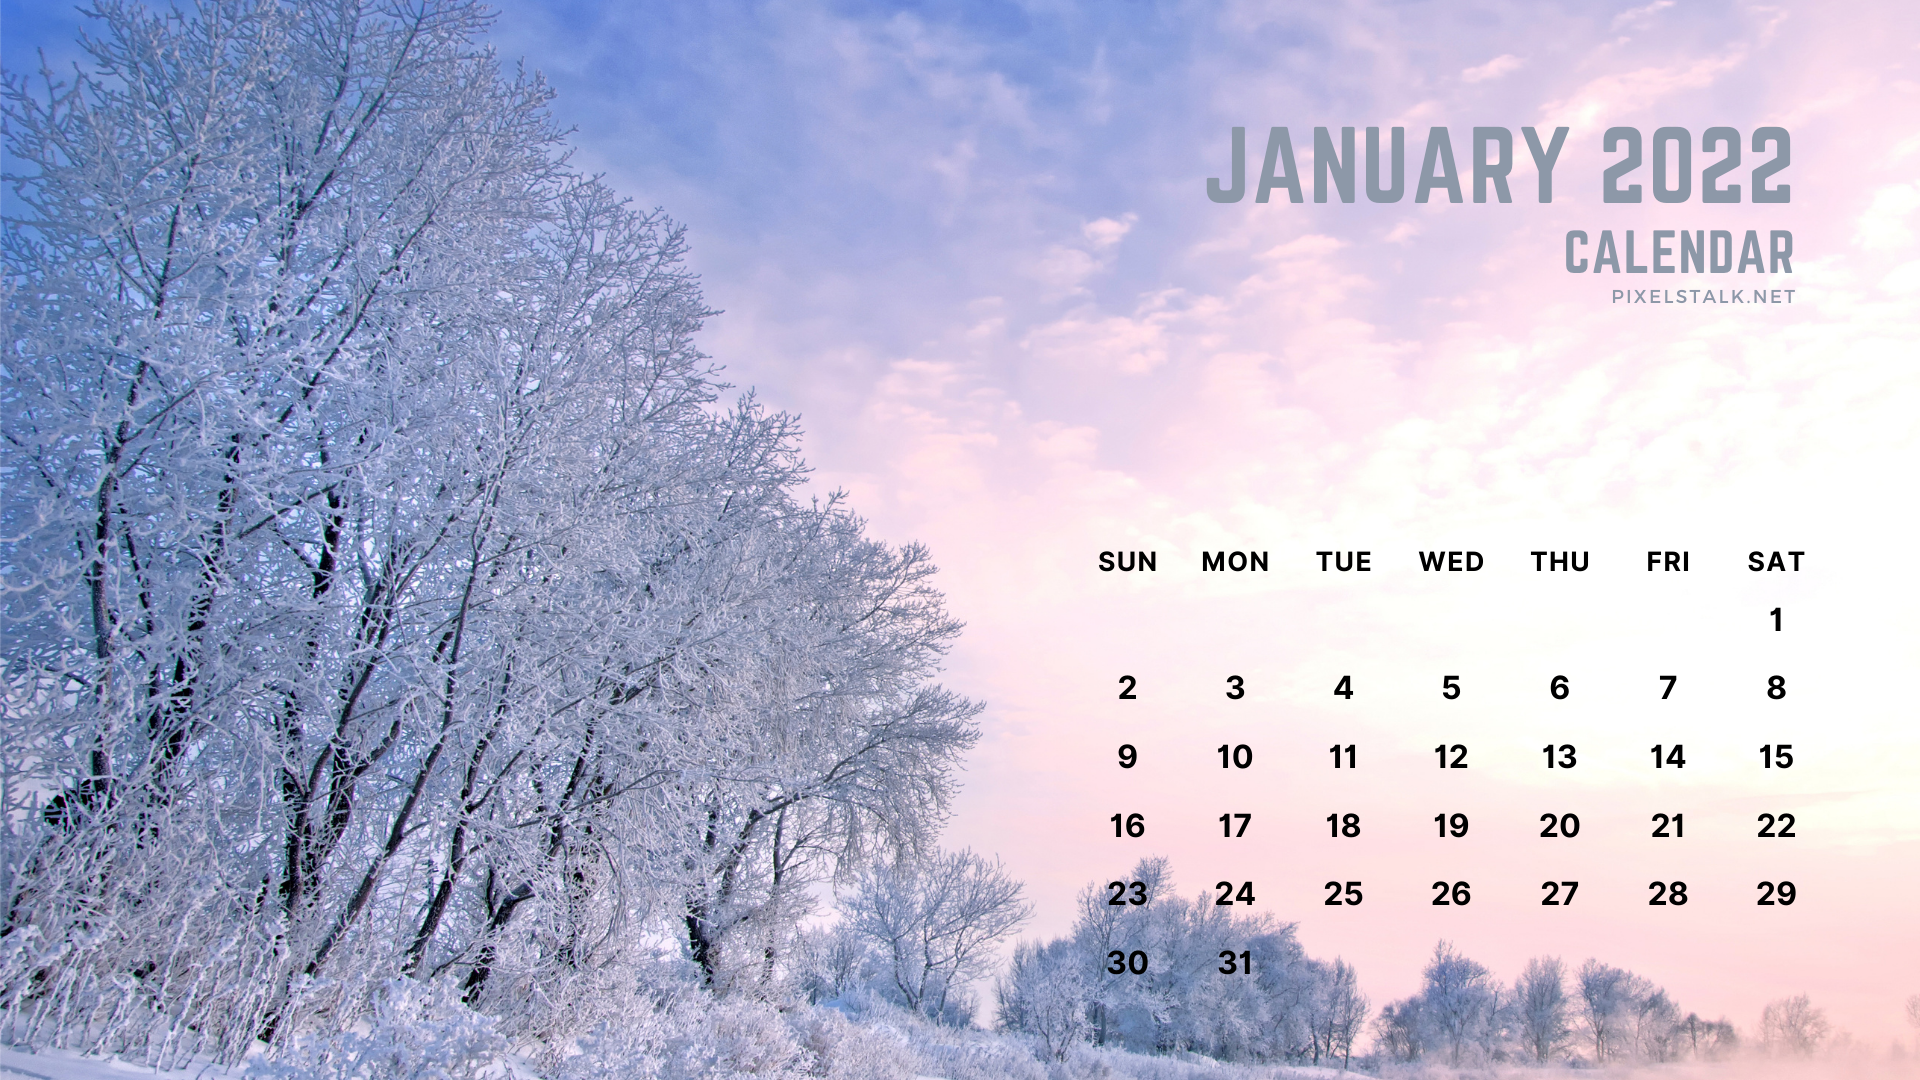 Lịch tháng 1 2022: Với lịch tháng 1 2022, bạn sẽ sẵn sàng chào đón một năm mới đầy hứa hẹn. Hãy đặt lịch kế hoạch cho cả năm và bắt đầu từ tháng đầu tiên này.